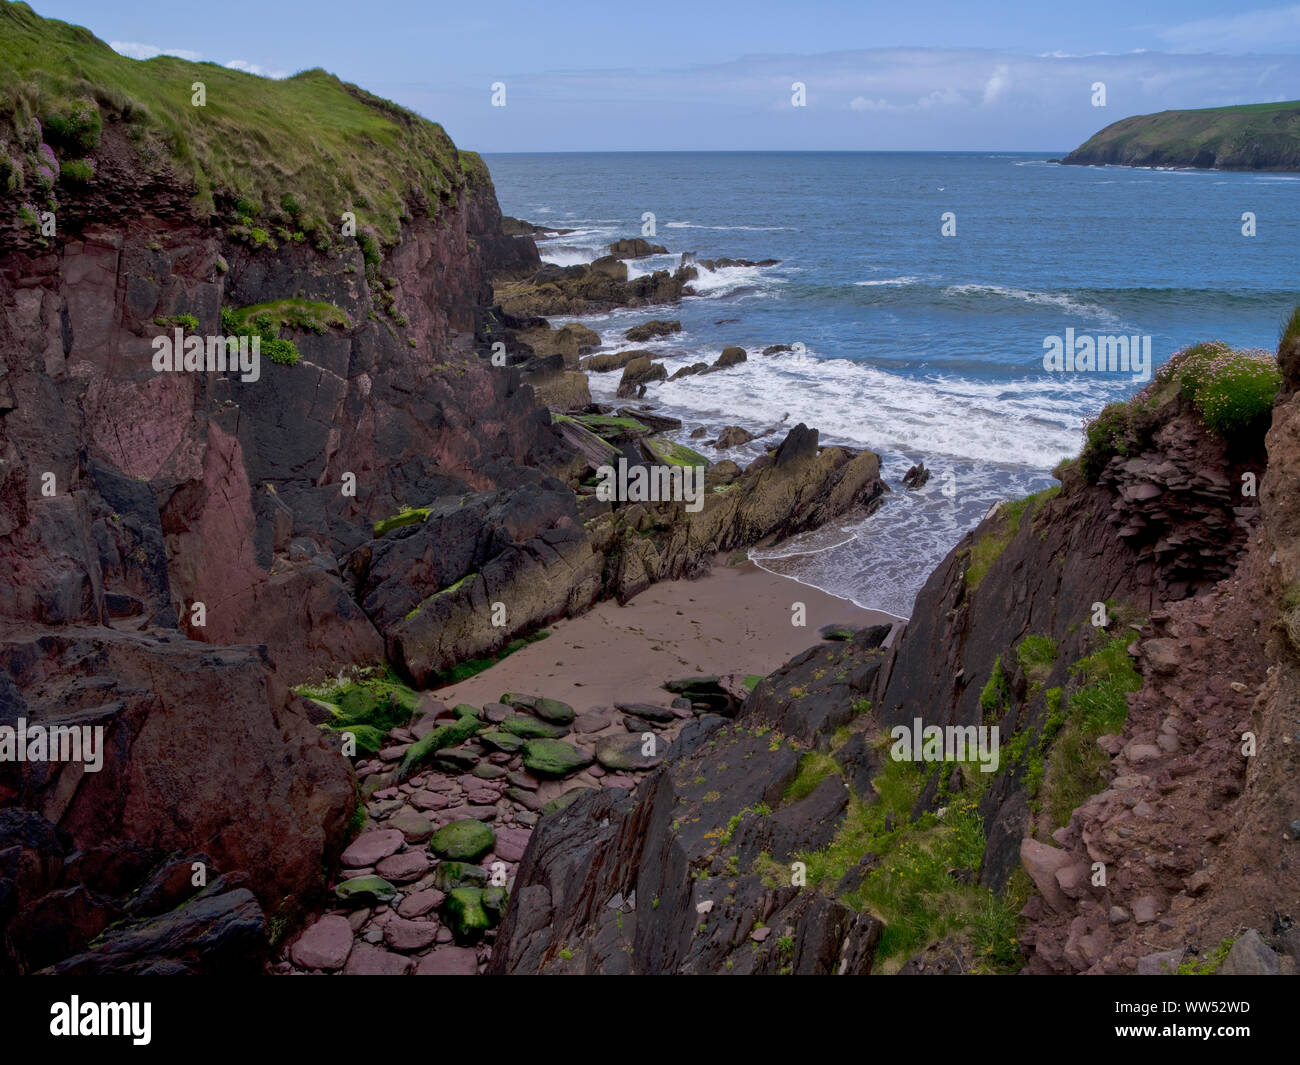 Ireland, County Kerry, Dingle peninsula, coast at the Reenbeg Point Stock Photo